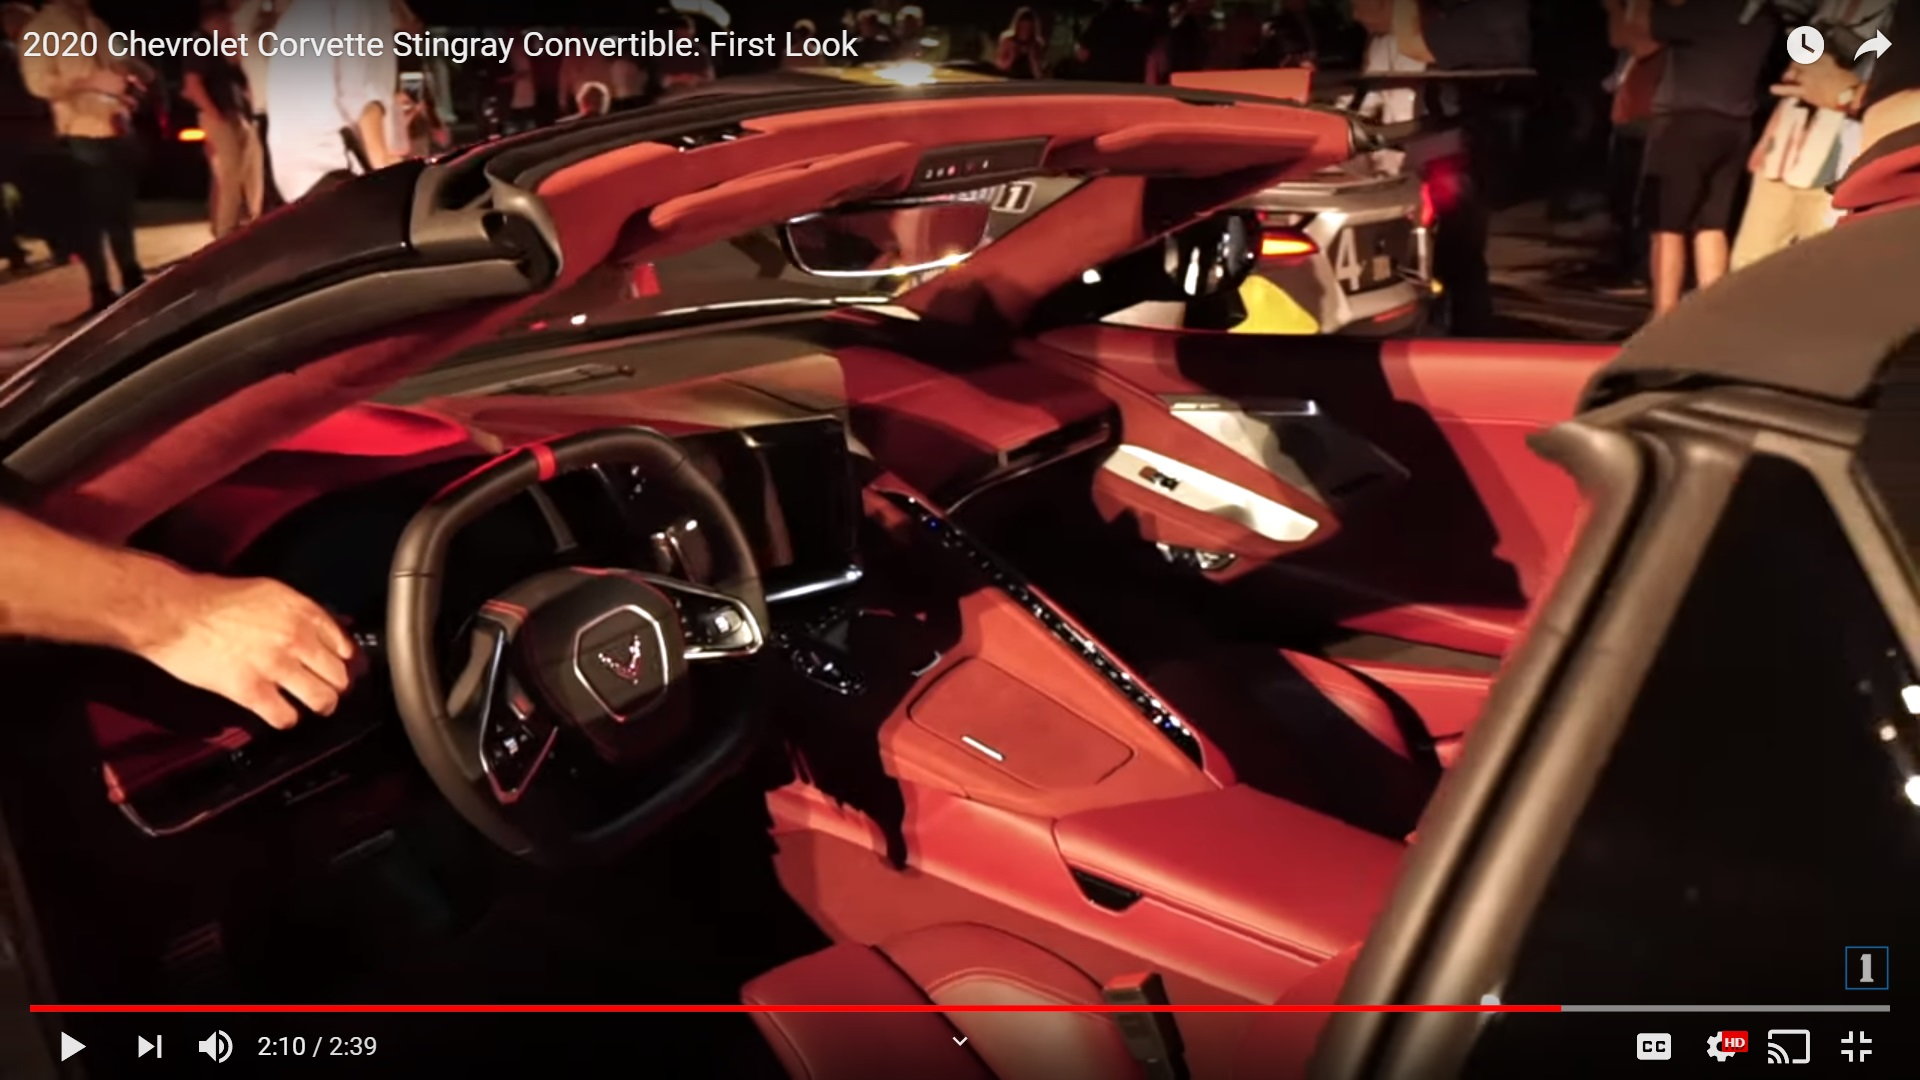 Morello Red In An Actual 2020 Corvette Pics Video